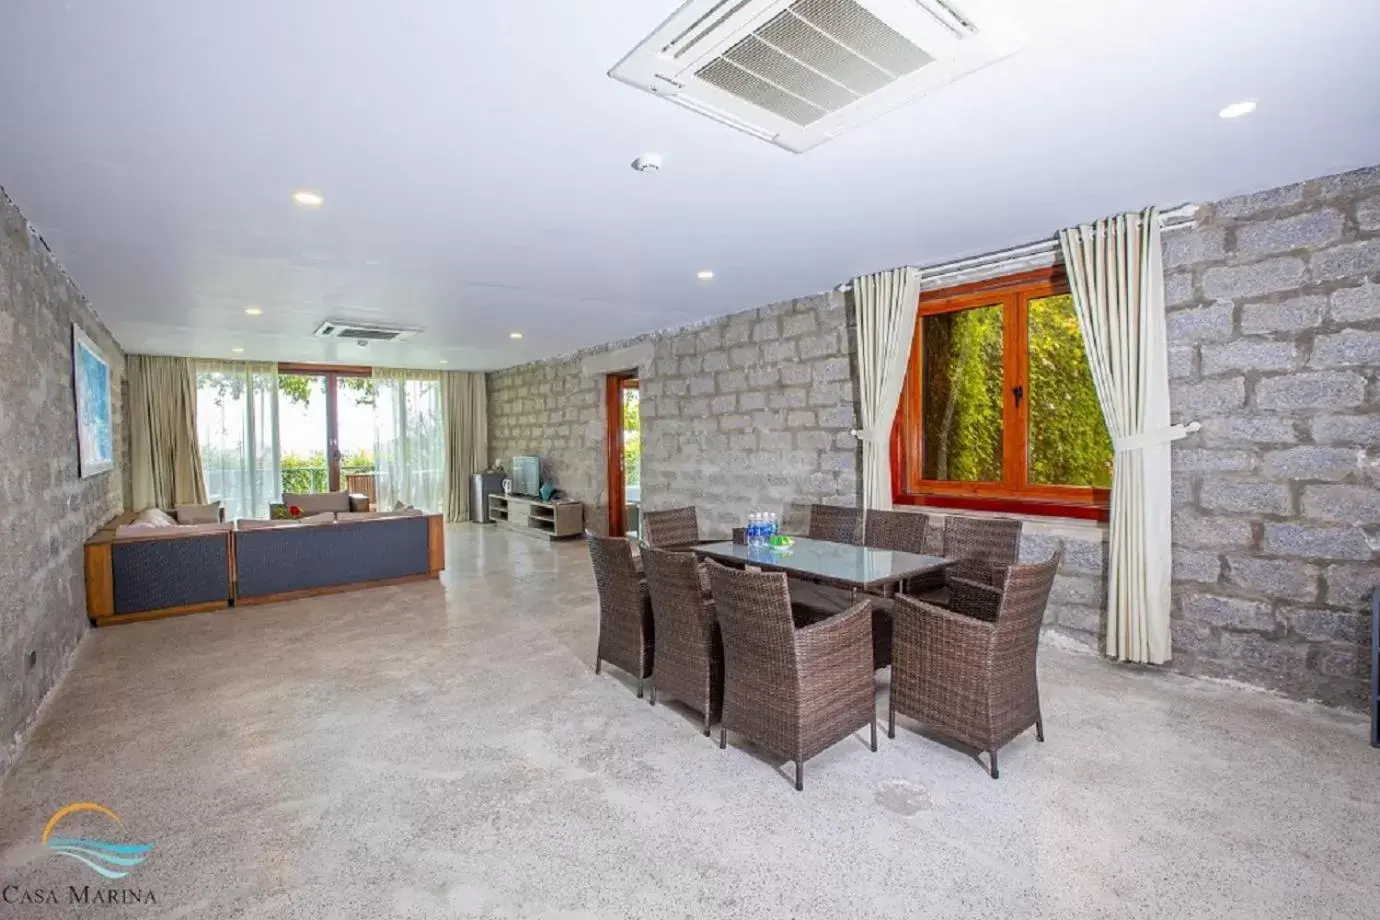 Living room in Casa Marina Resort